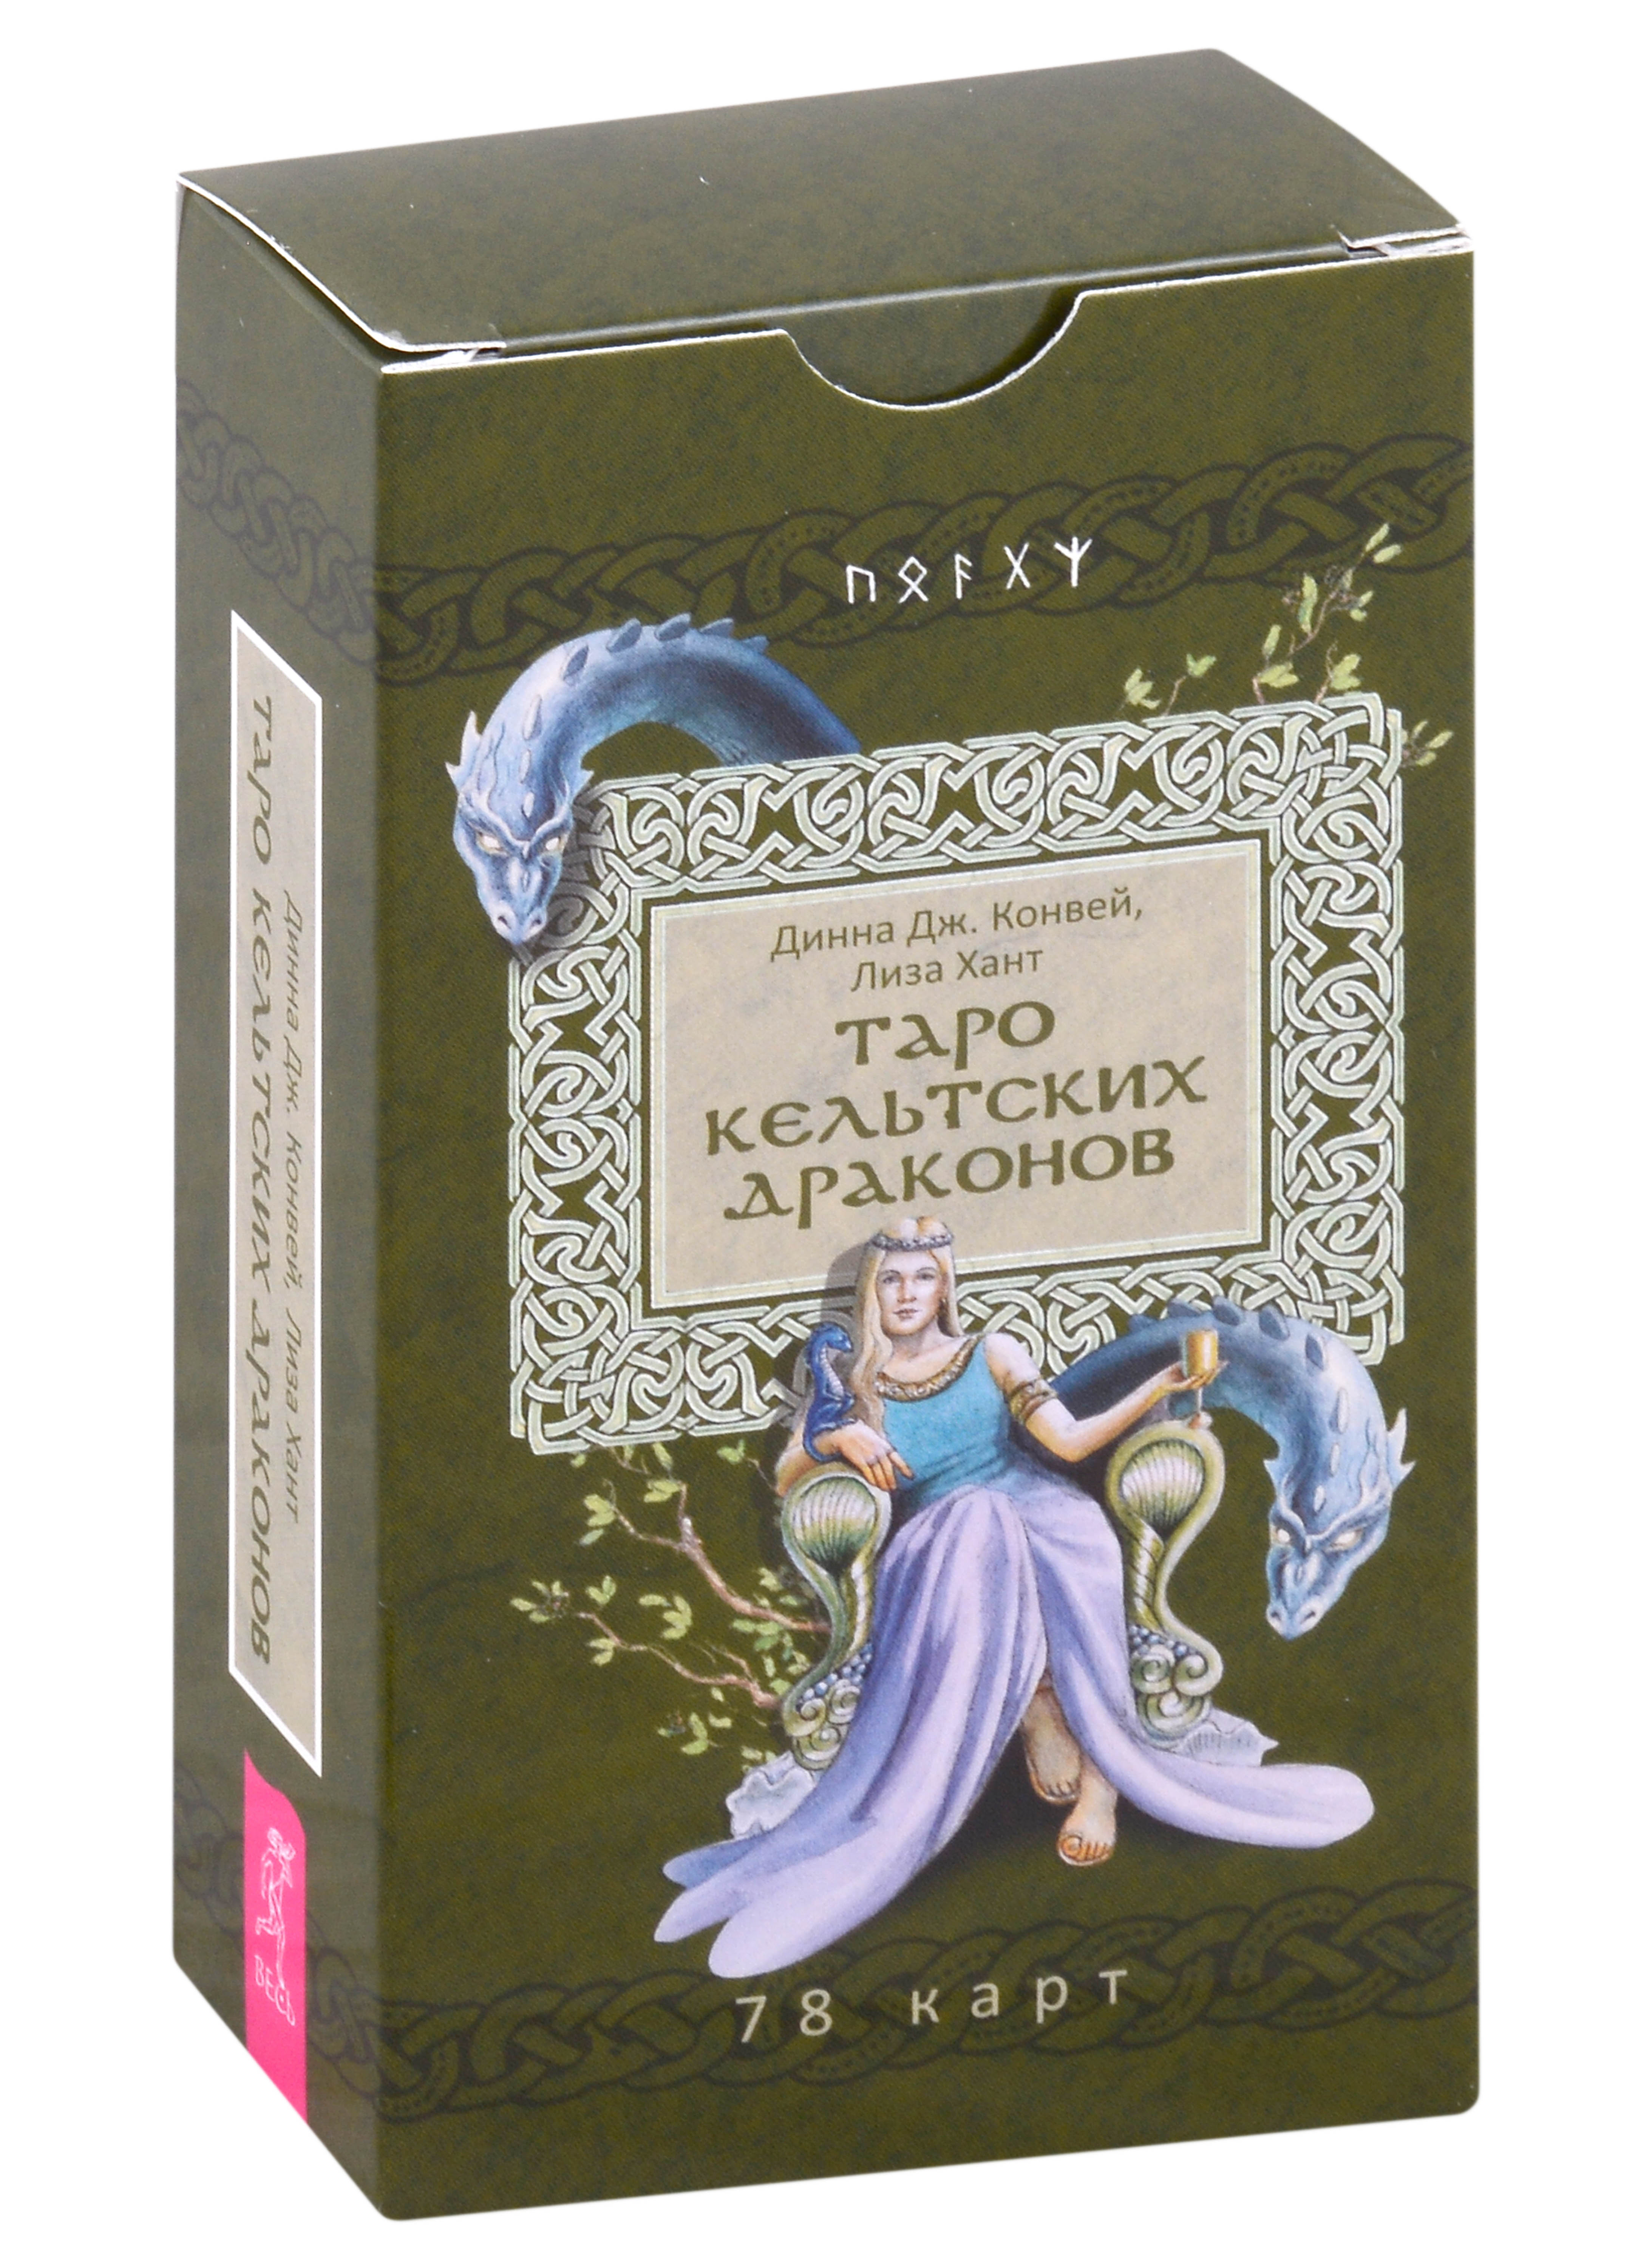 Конвей Динна Дж., Хант Лиза Таро кельтских драконов (78 карт) роза конвей пулсен